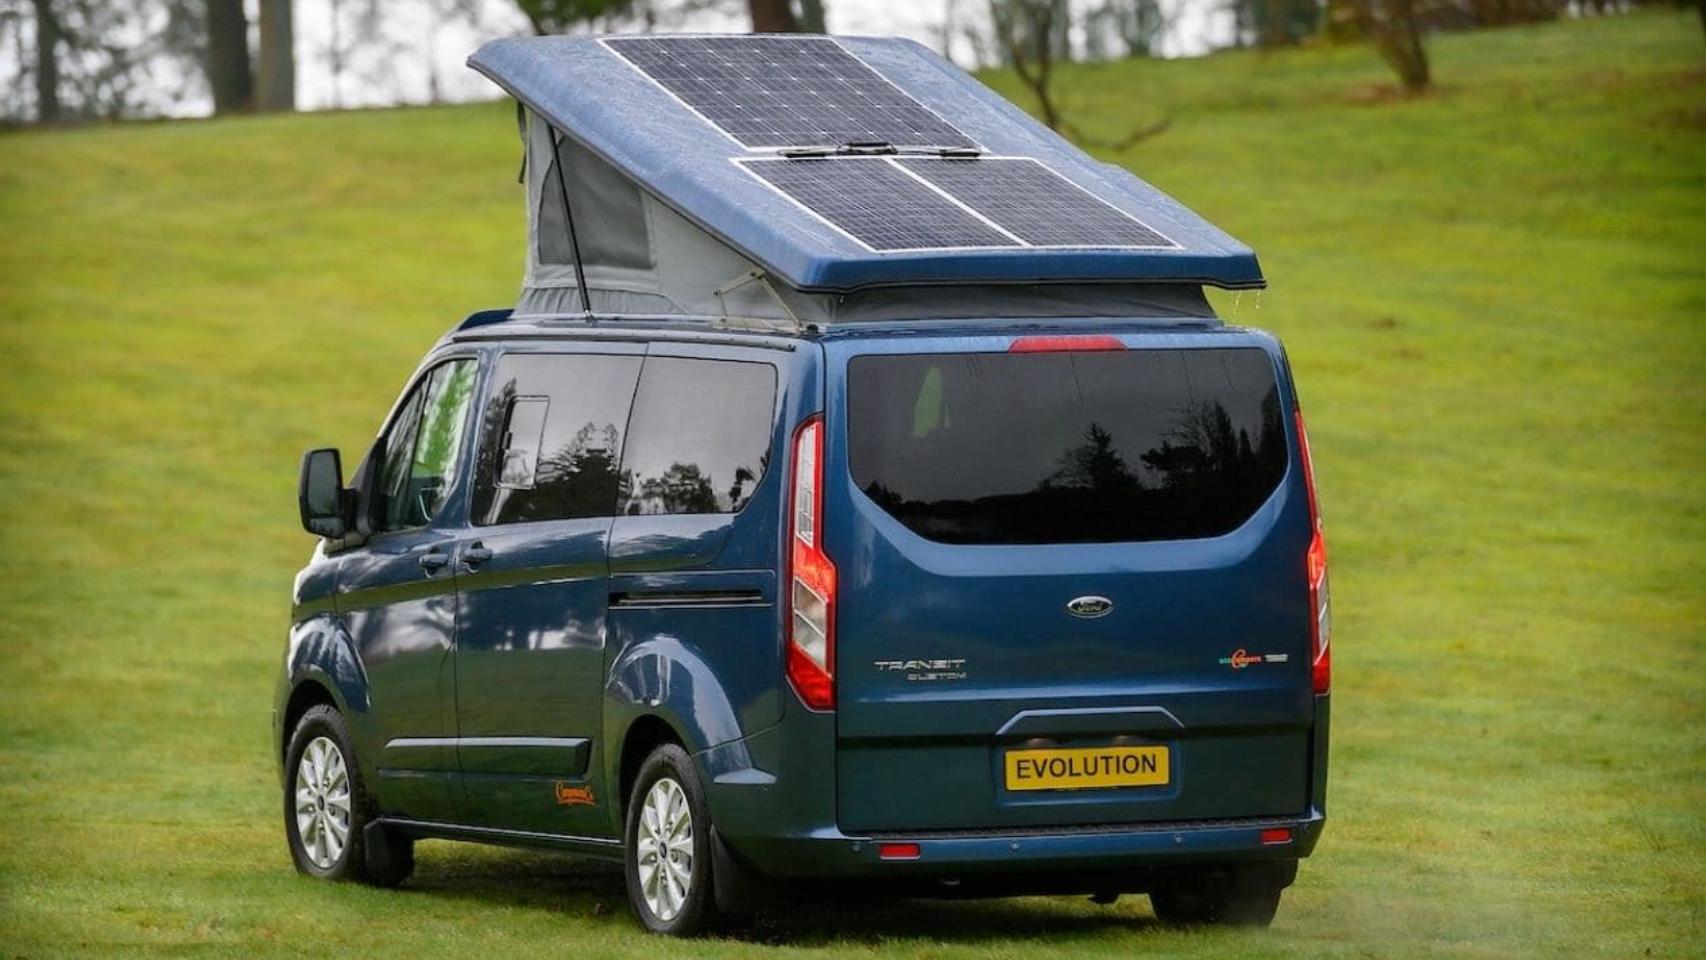 Campers y caravanas: paneles solares y estaciones de energía